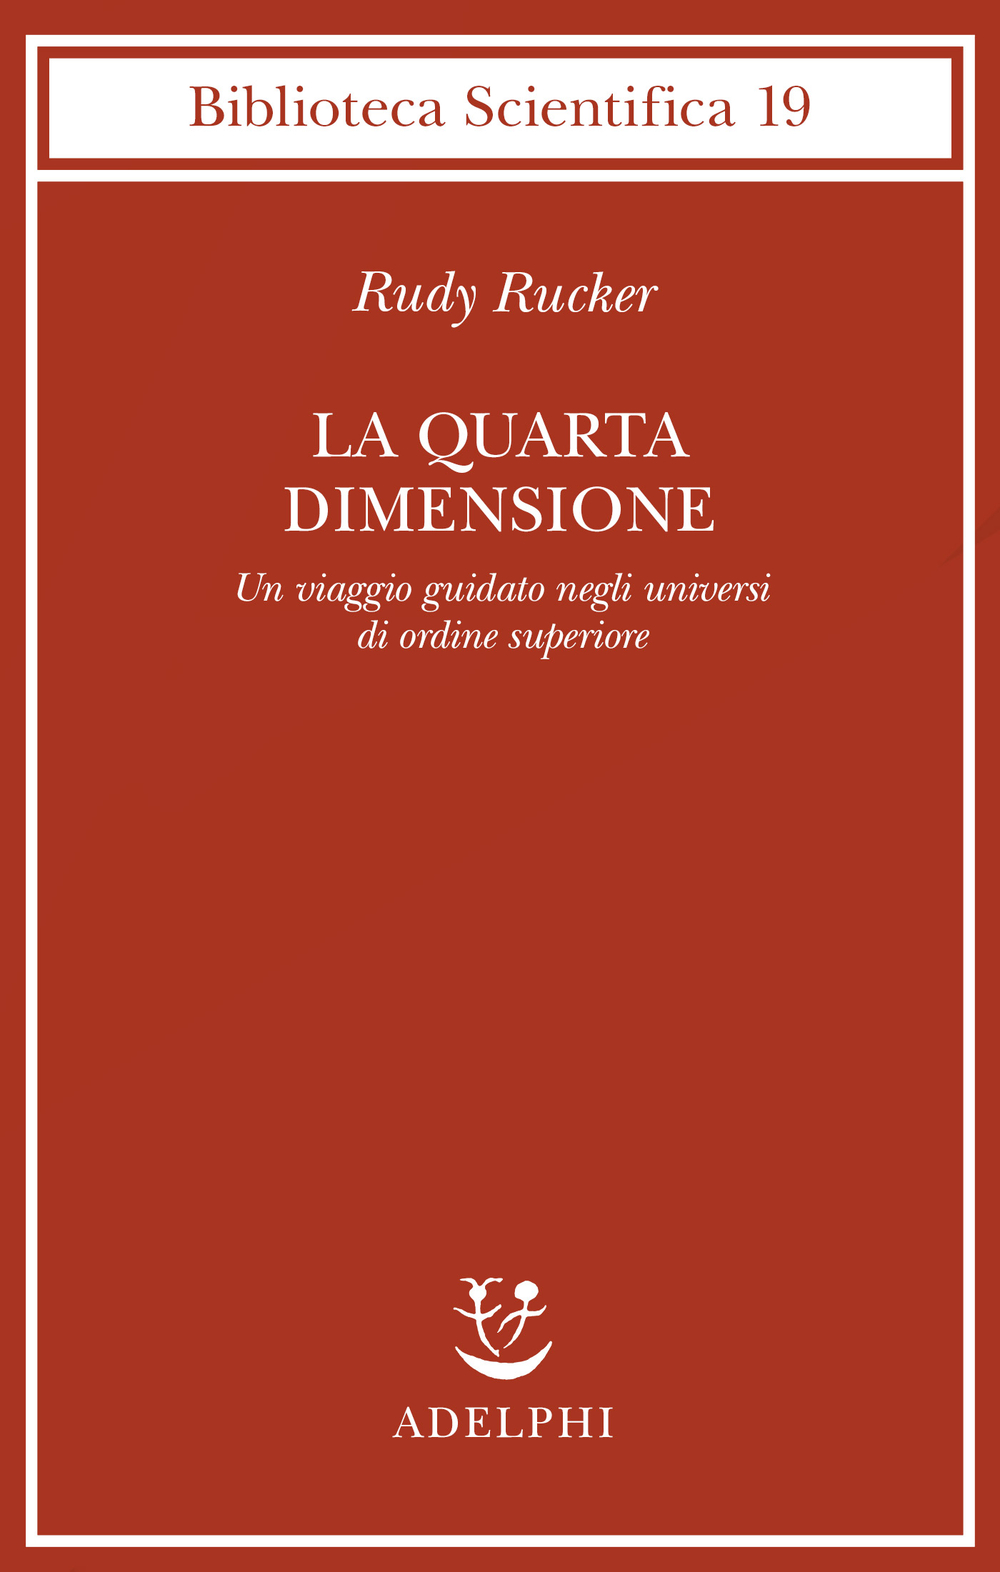 La quarta dimensione (Paperback, 2001, Adelphi)